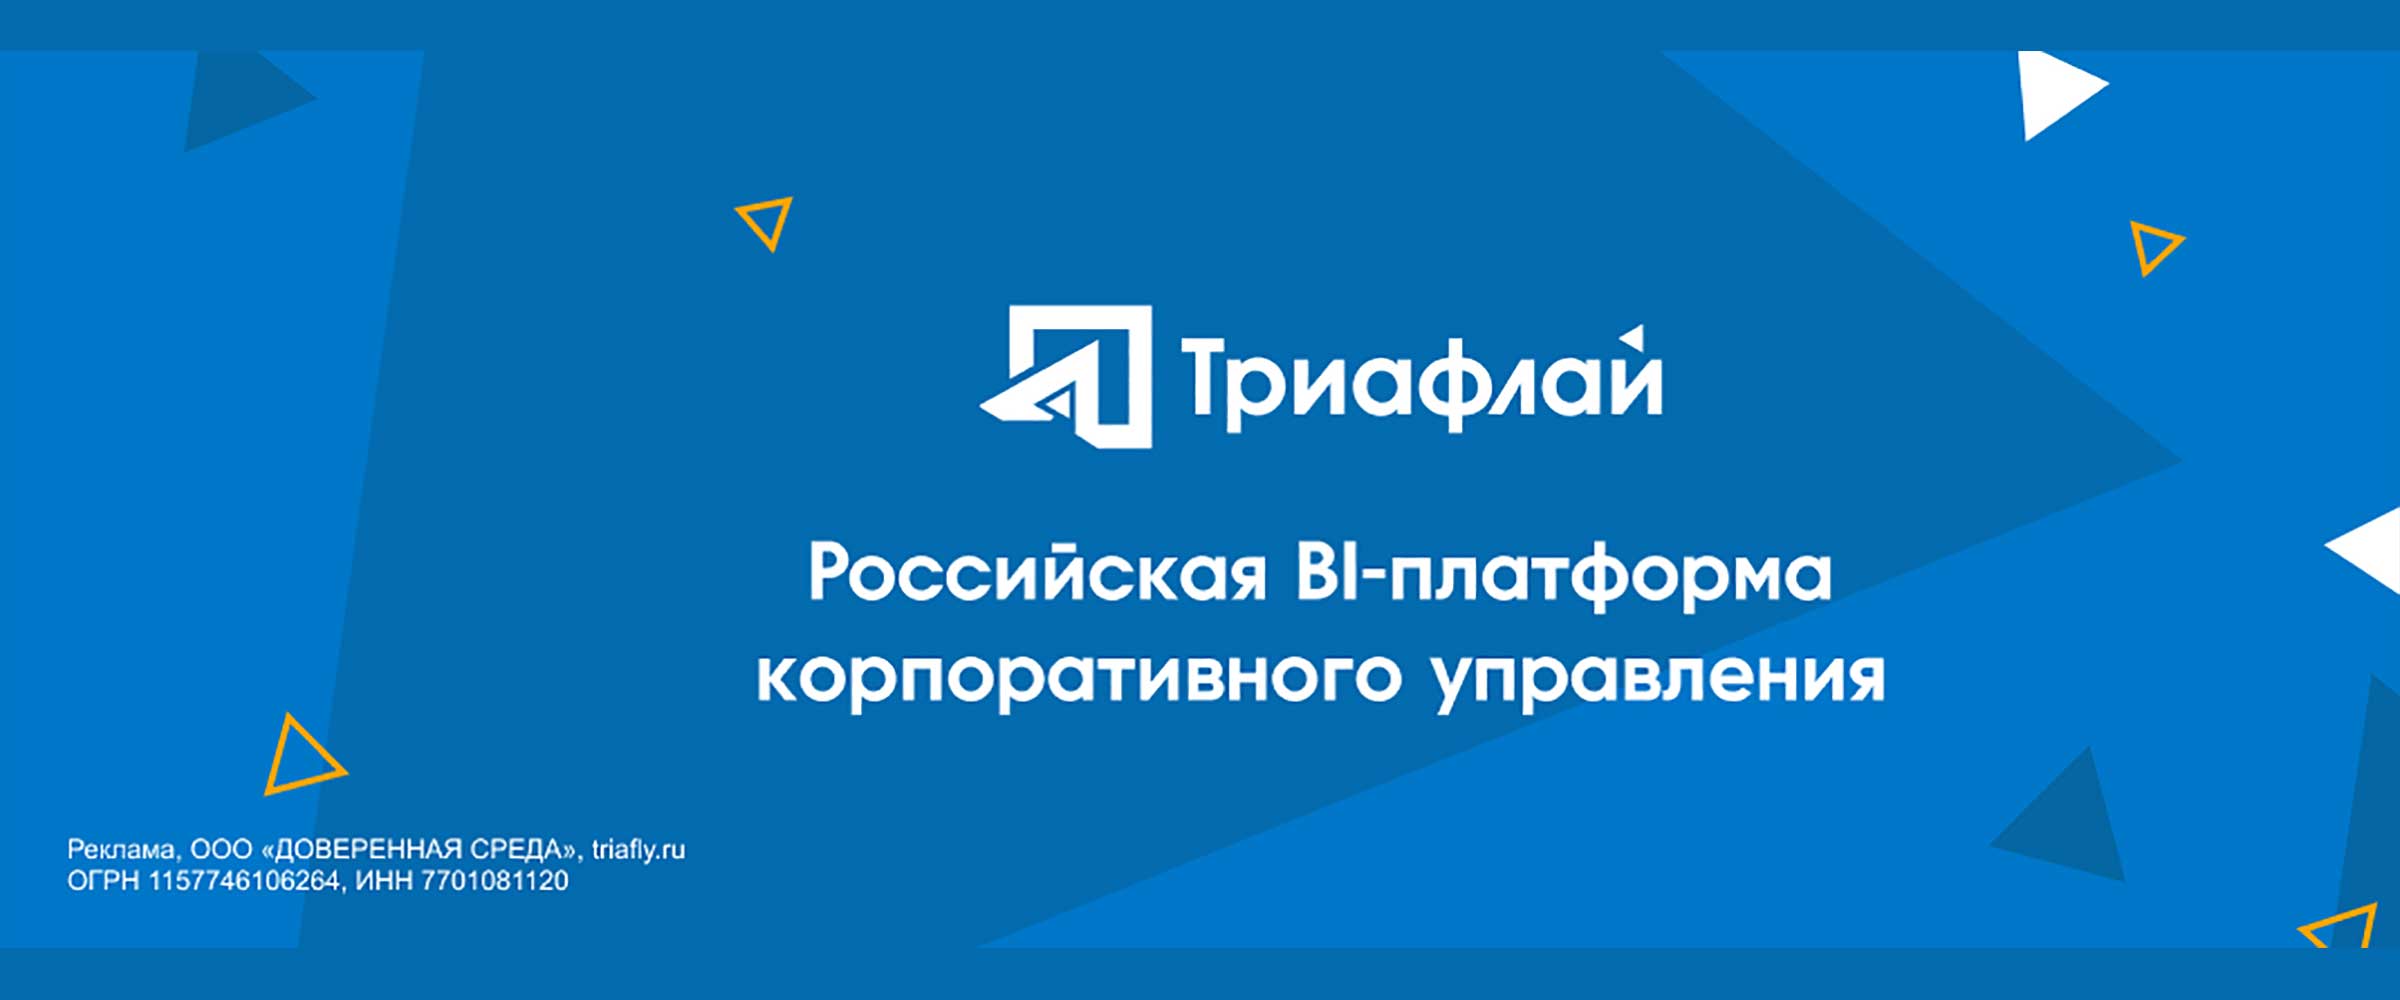 «Триафлай» — российская BI-платформа корпоративного управления